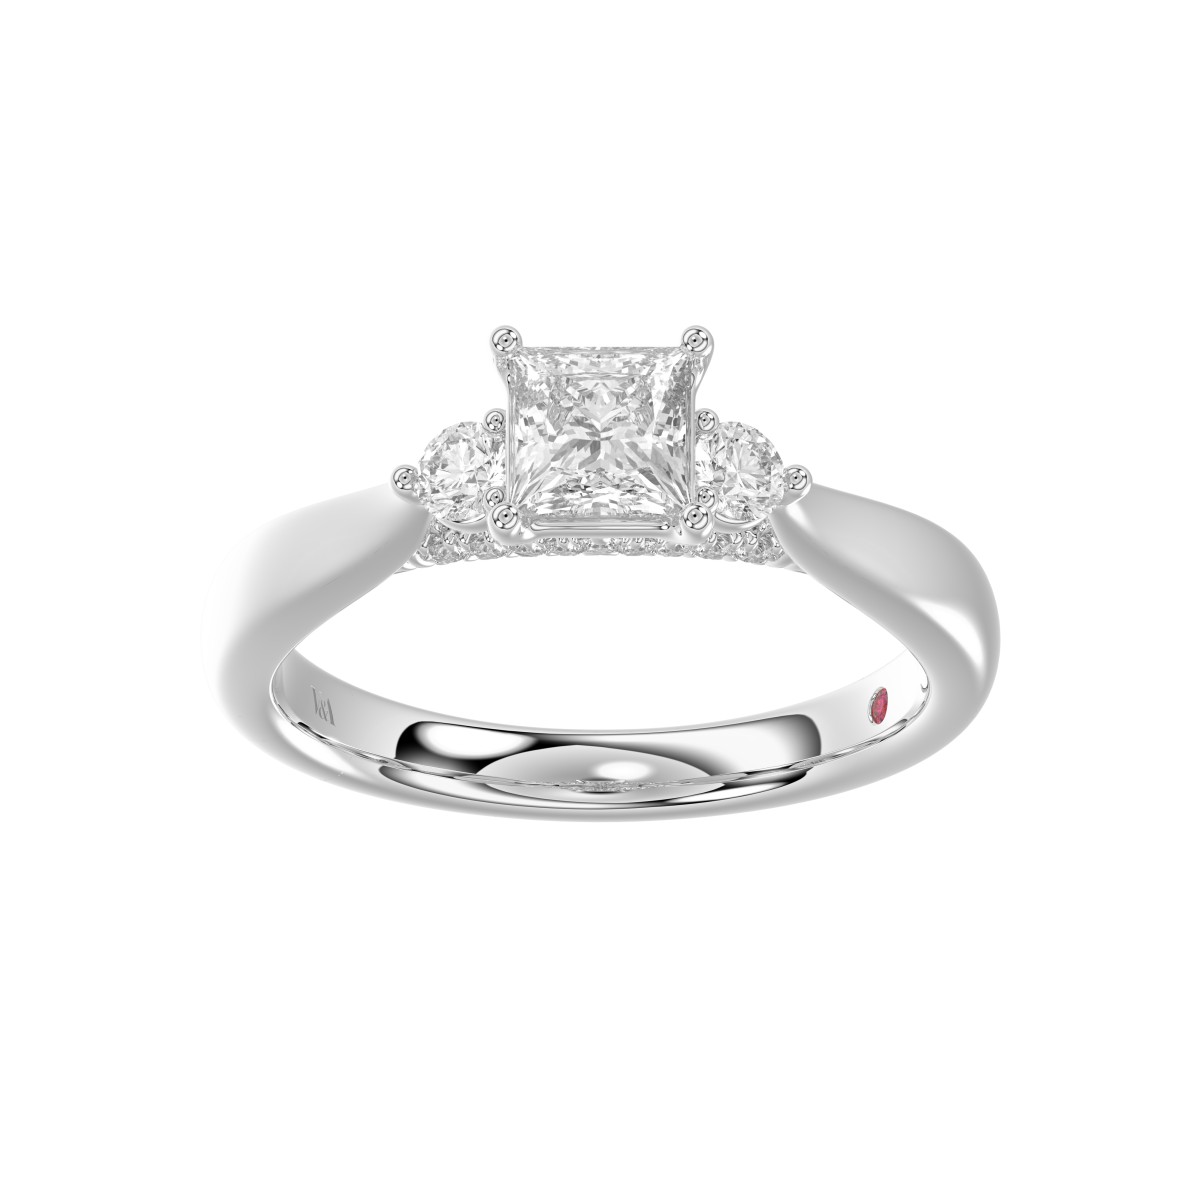 18K WHITE GOLD 1CT ROUND/PRINCESS DIAMOND LADIES RING( CENTER STONE PRINCESS DIAMOND 3/4 CT)